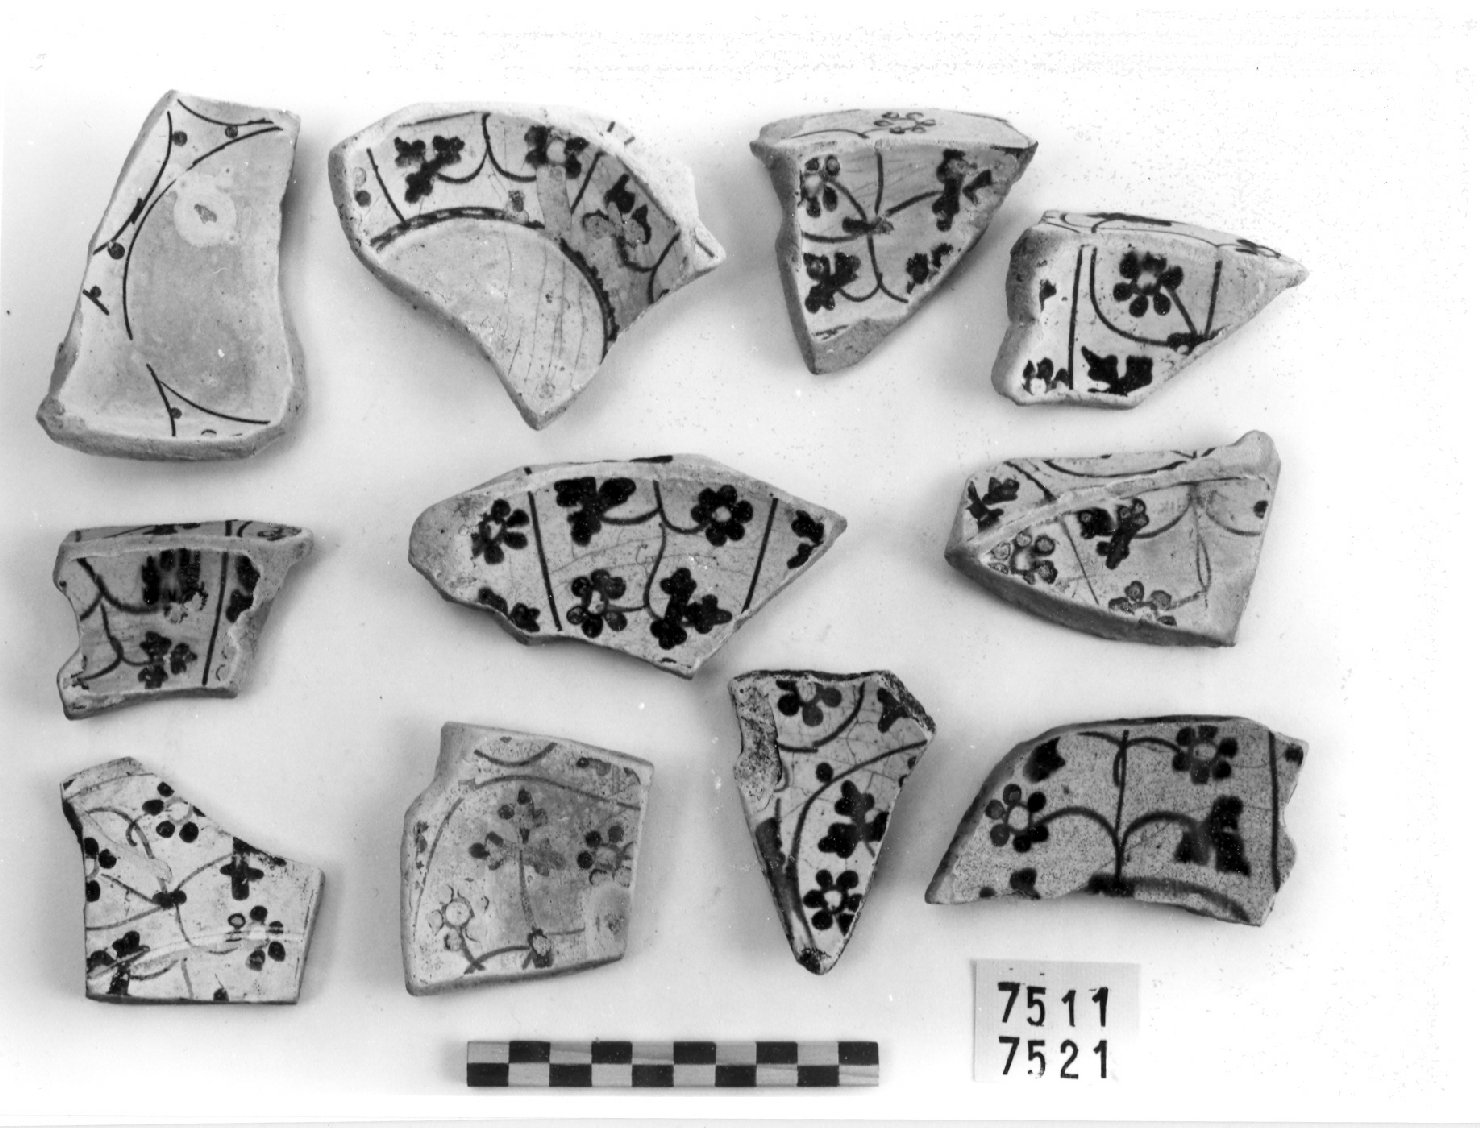 motivi decorativi vegetali (scodella, frammento) - bottega valenciana (secc. XIV/ XV)